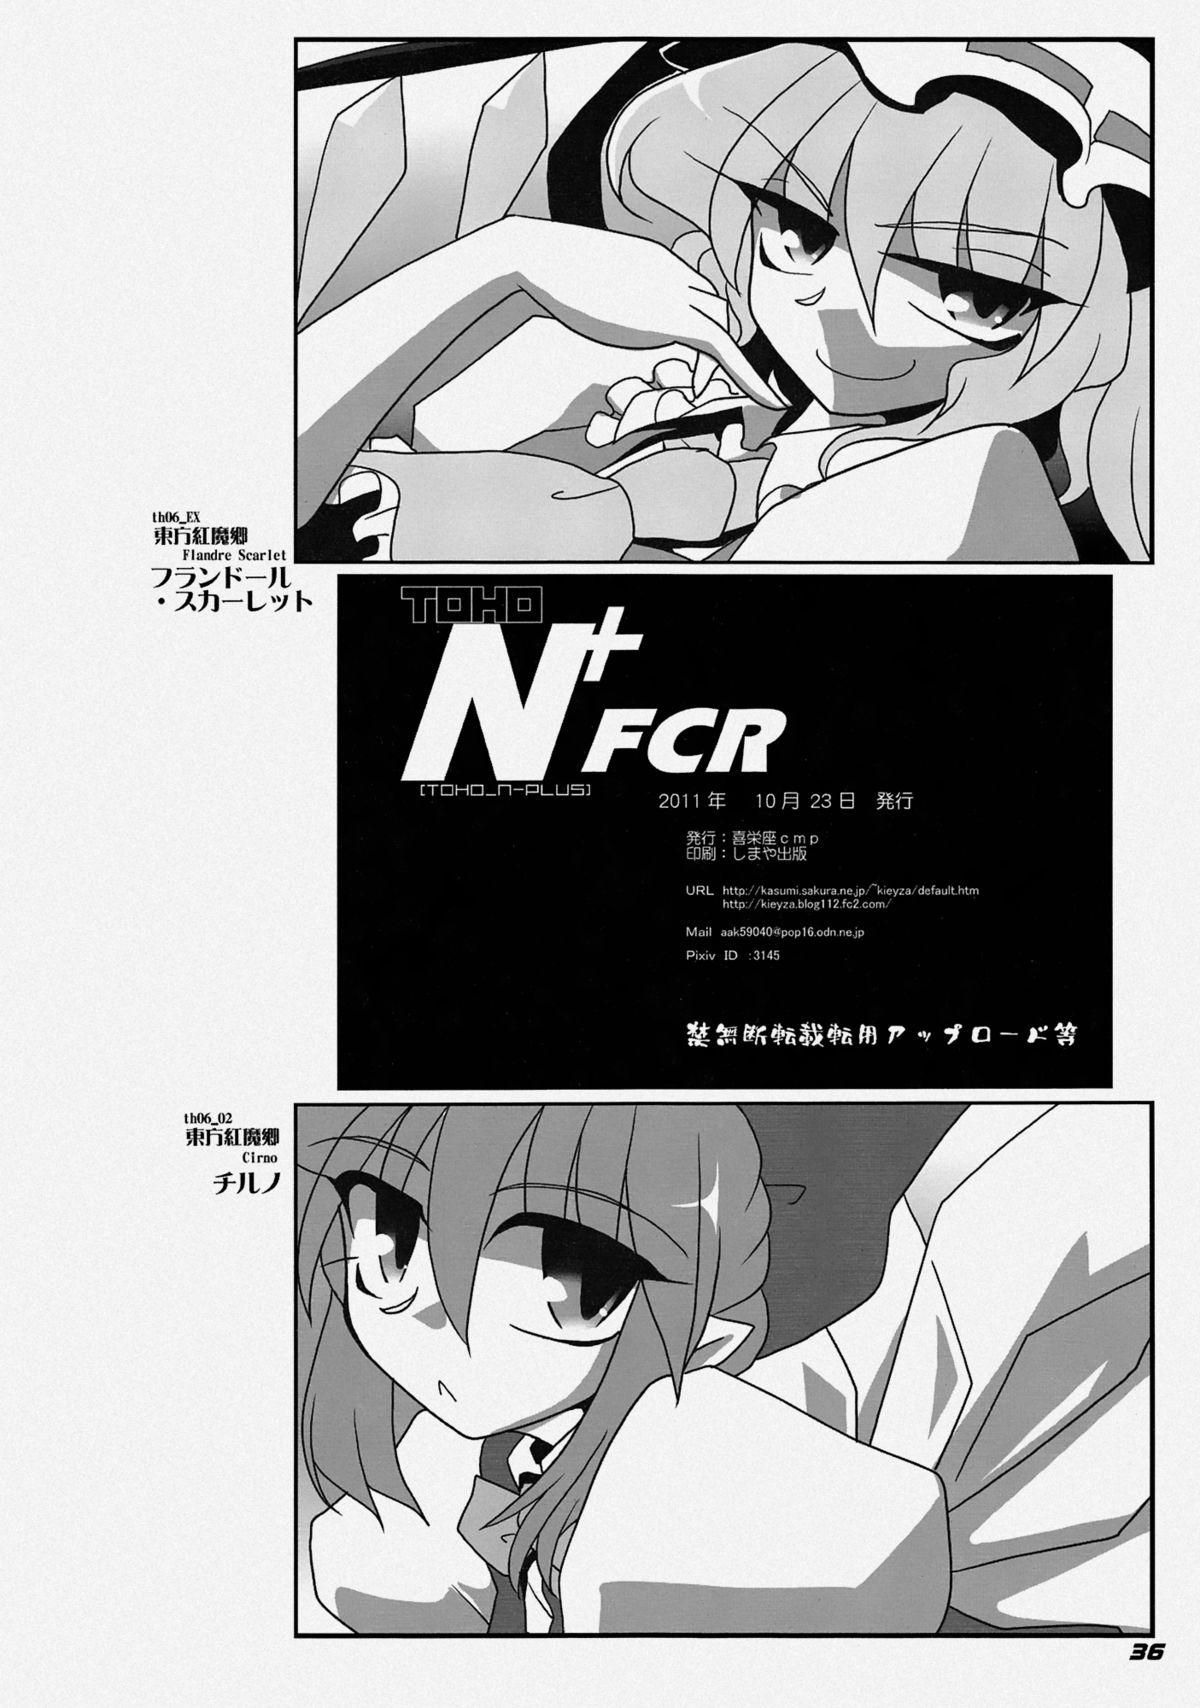 TOHO N+ FCR 38